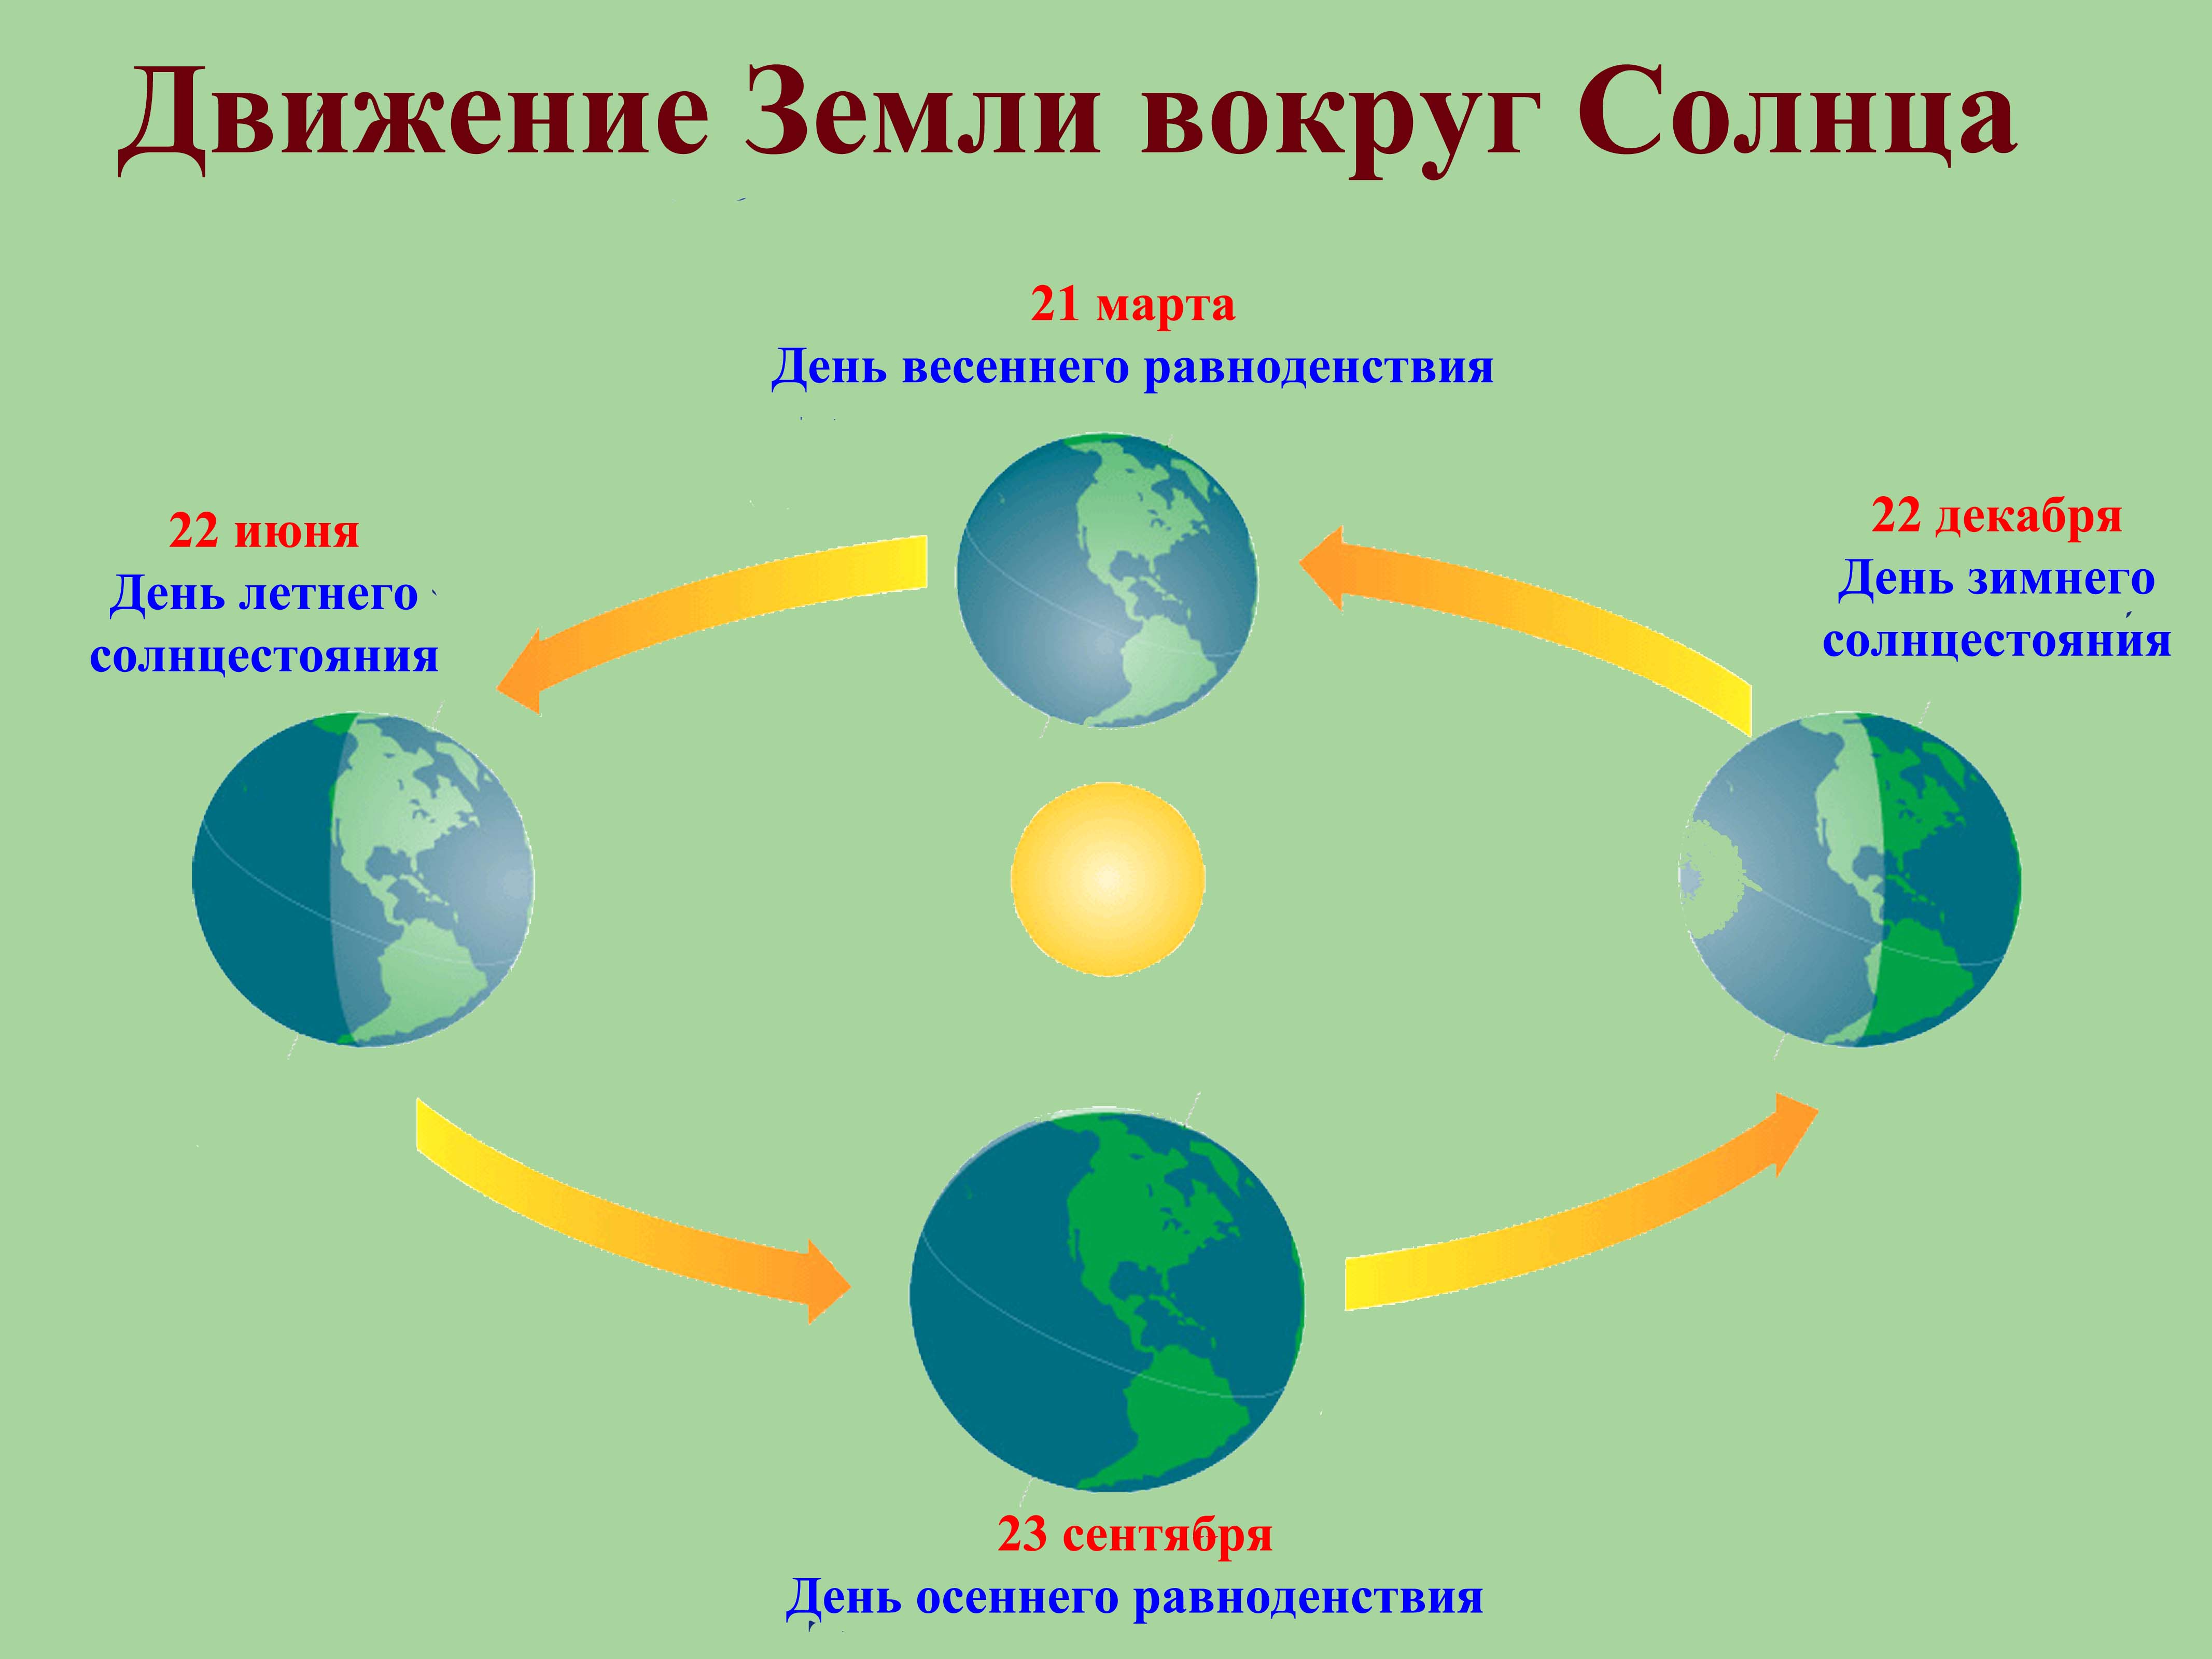 Вокруг насколько. Схема движения планеты земля вокруг солнца. Схема вращения земли вокруг солнца. Годовой цикл земли вокруг солнца. Схема годового вращения земли вокруг солнца.